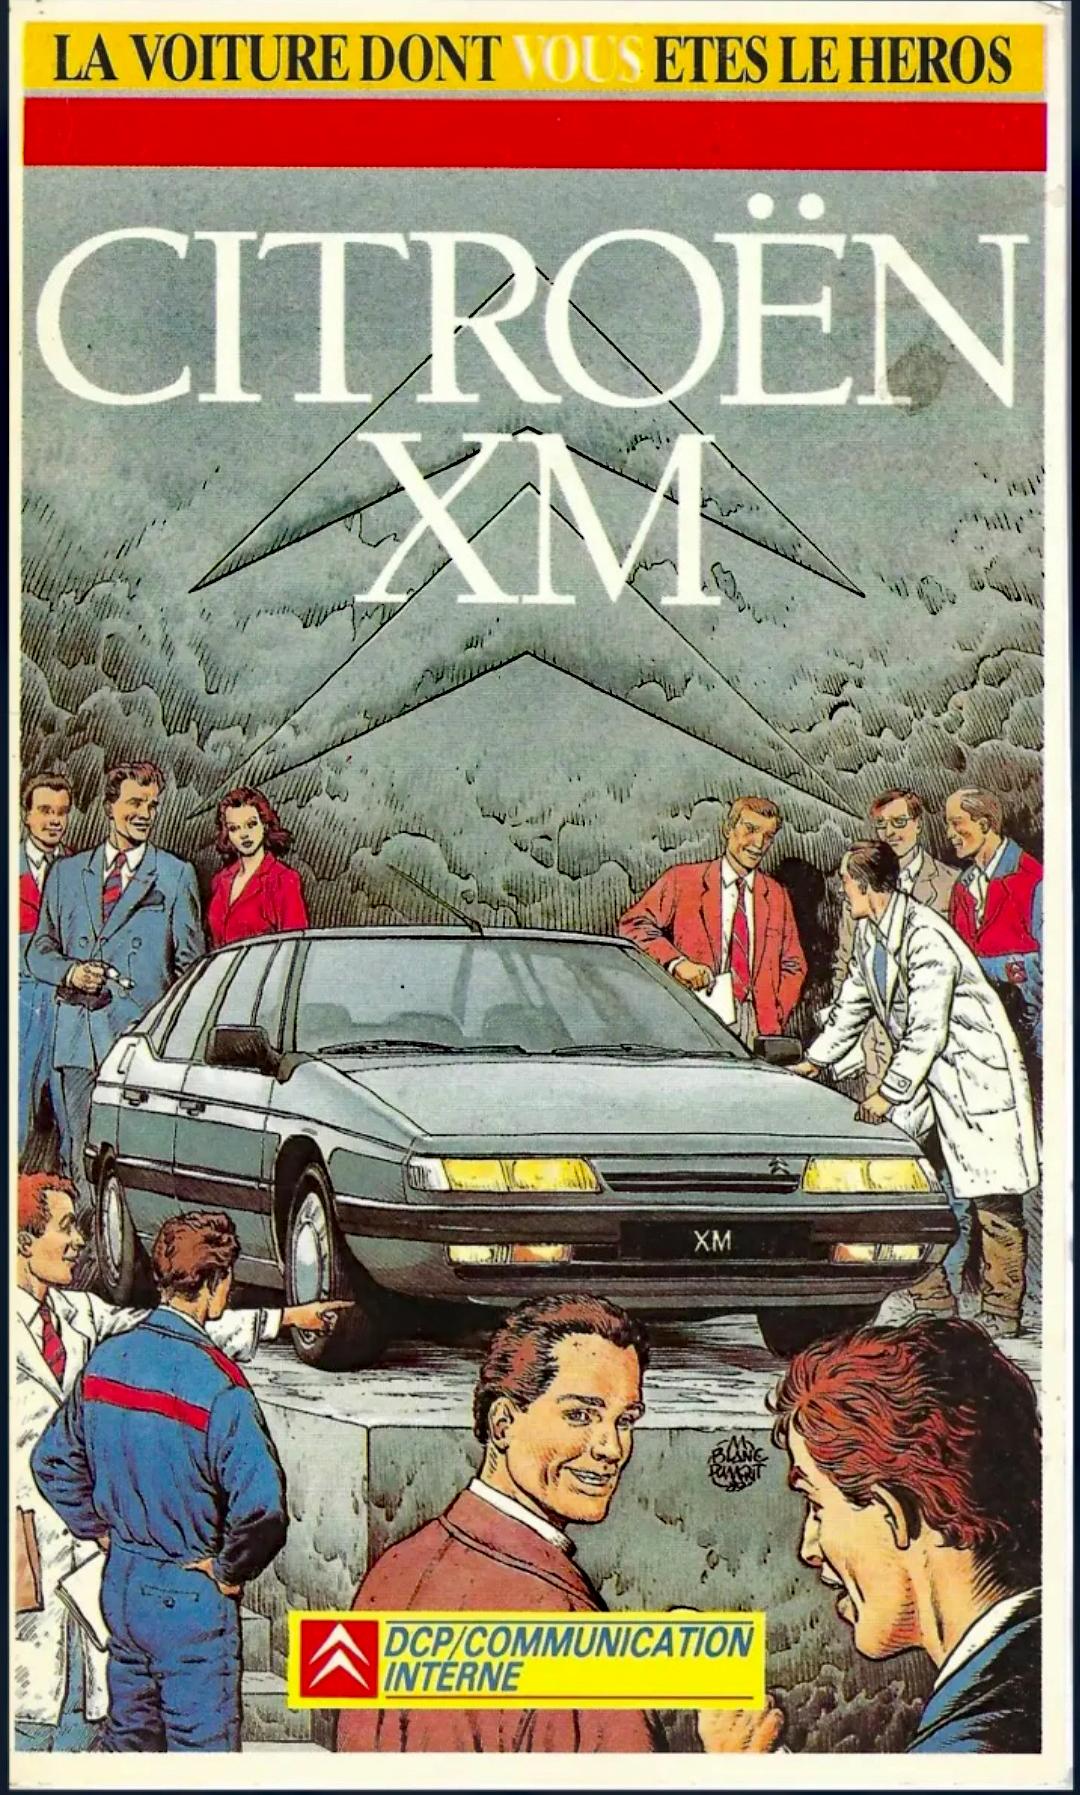 1989 Citroën XM - Le livre dont vous etes le heros